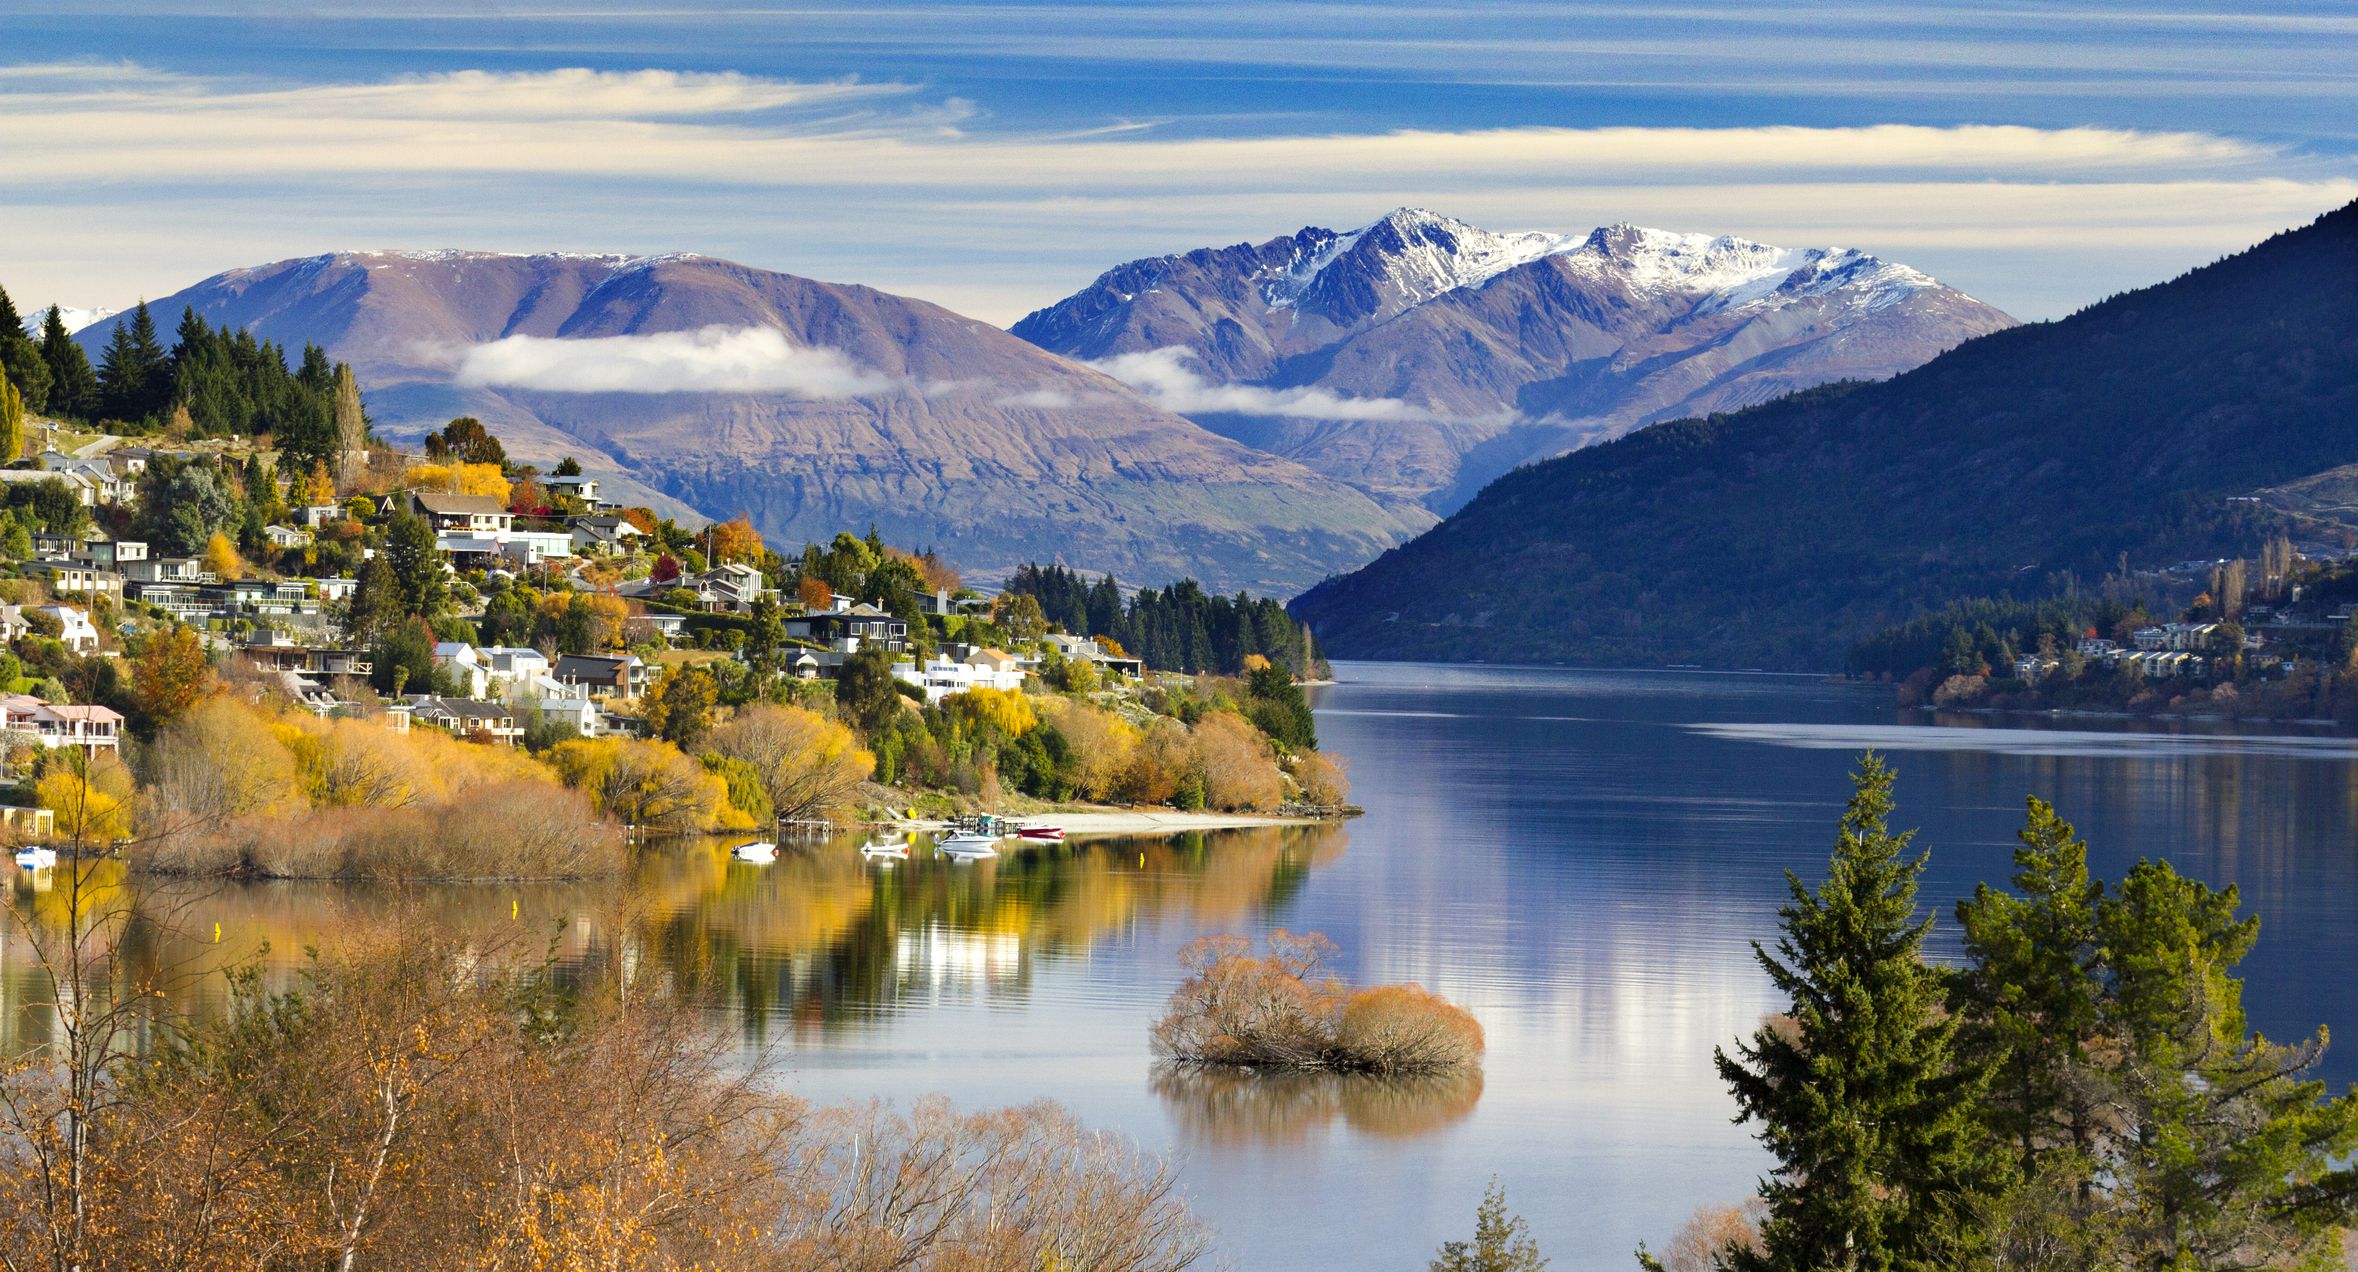 Mùa thu ở New Zealand với đặc trưng là những khu rừng chuyển màu